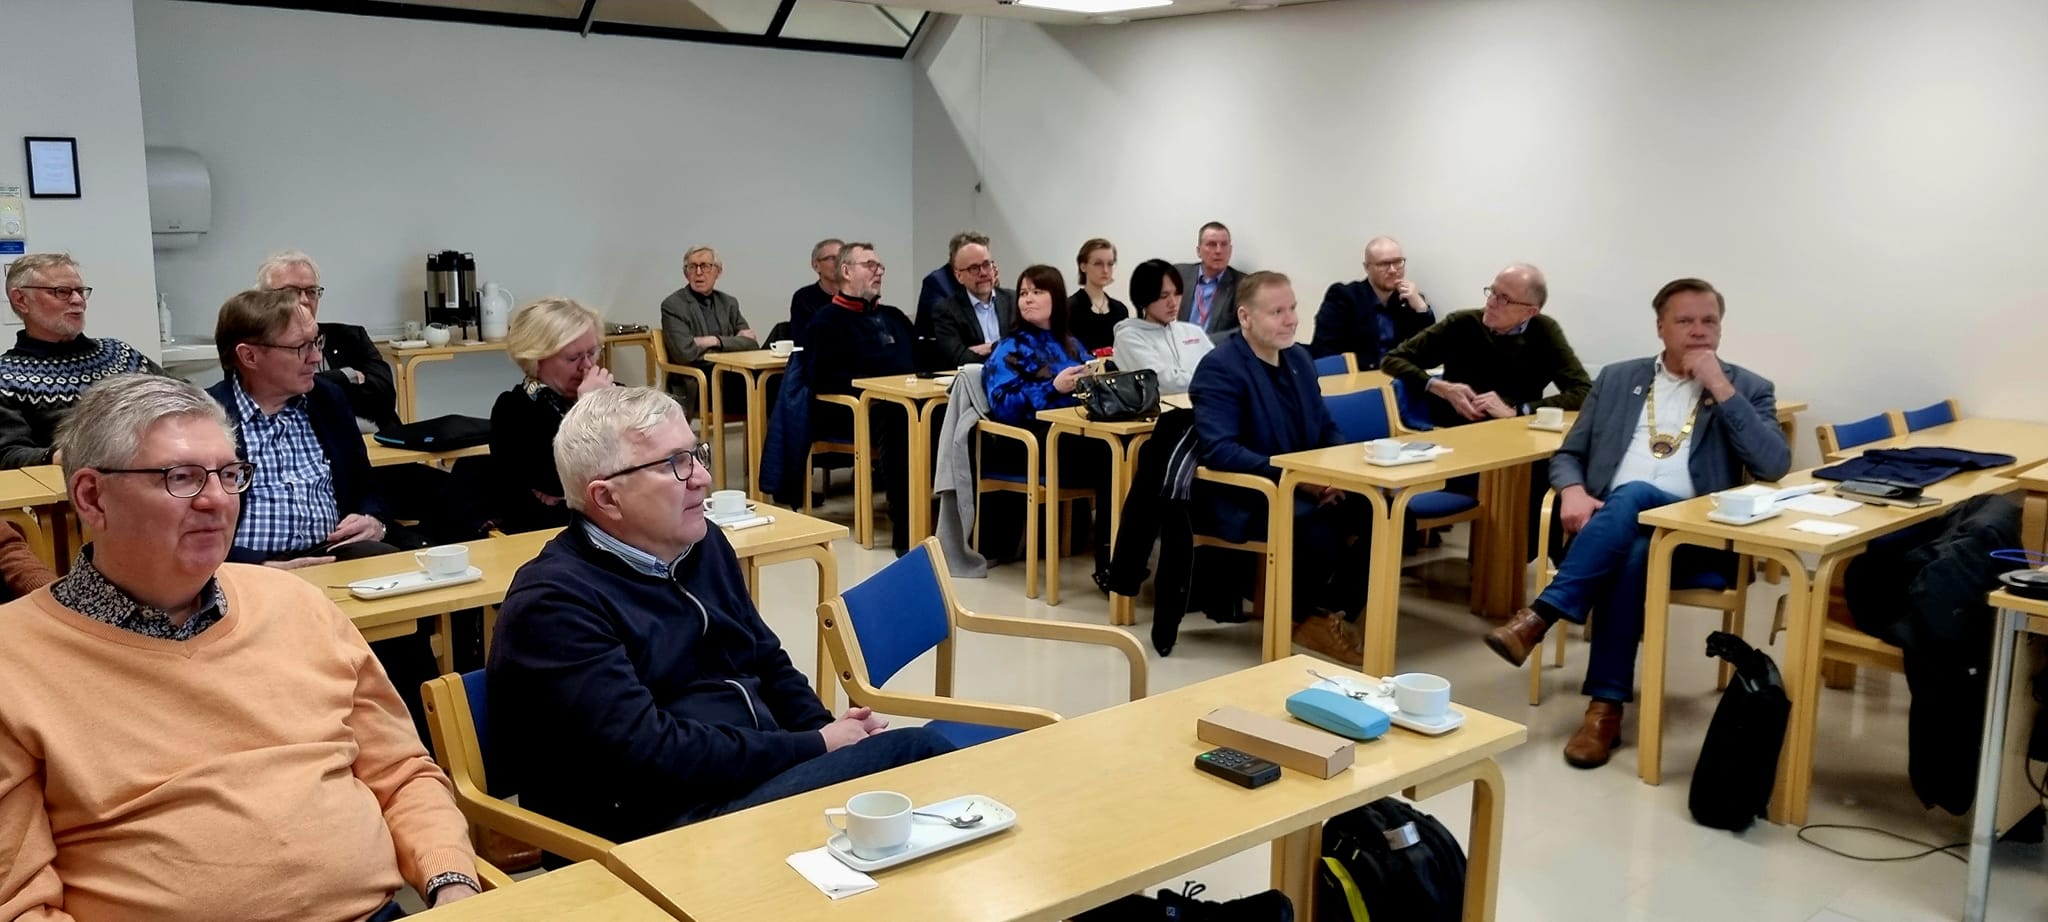 Rovaniemen Rotaryklubin ja Rovaniemi Santa Claus Rotaryklubin yhteisellä yhteisövierailulla Lapin yliopistolla.